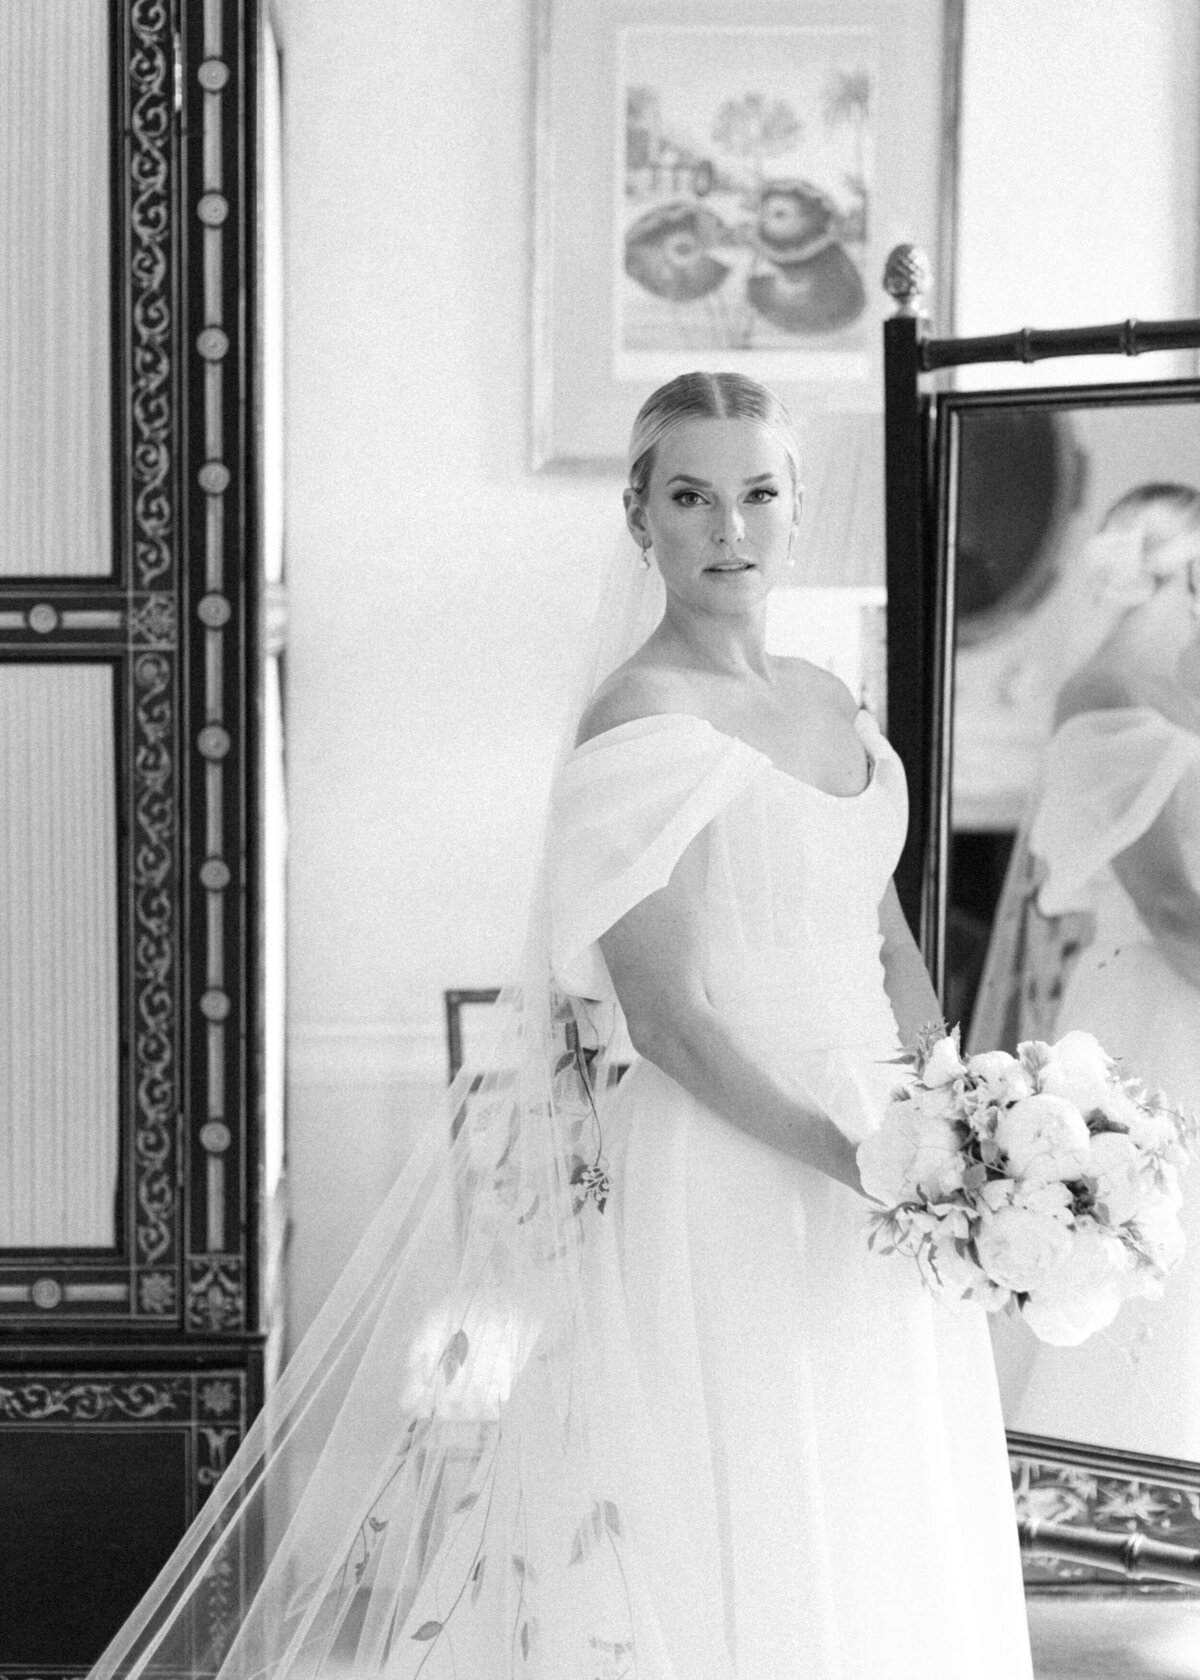 chloe-winstanley-weddings-cotswolds-cornwell-manor-monique-lhuillier-dress-bride-portrait-black-white